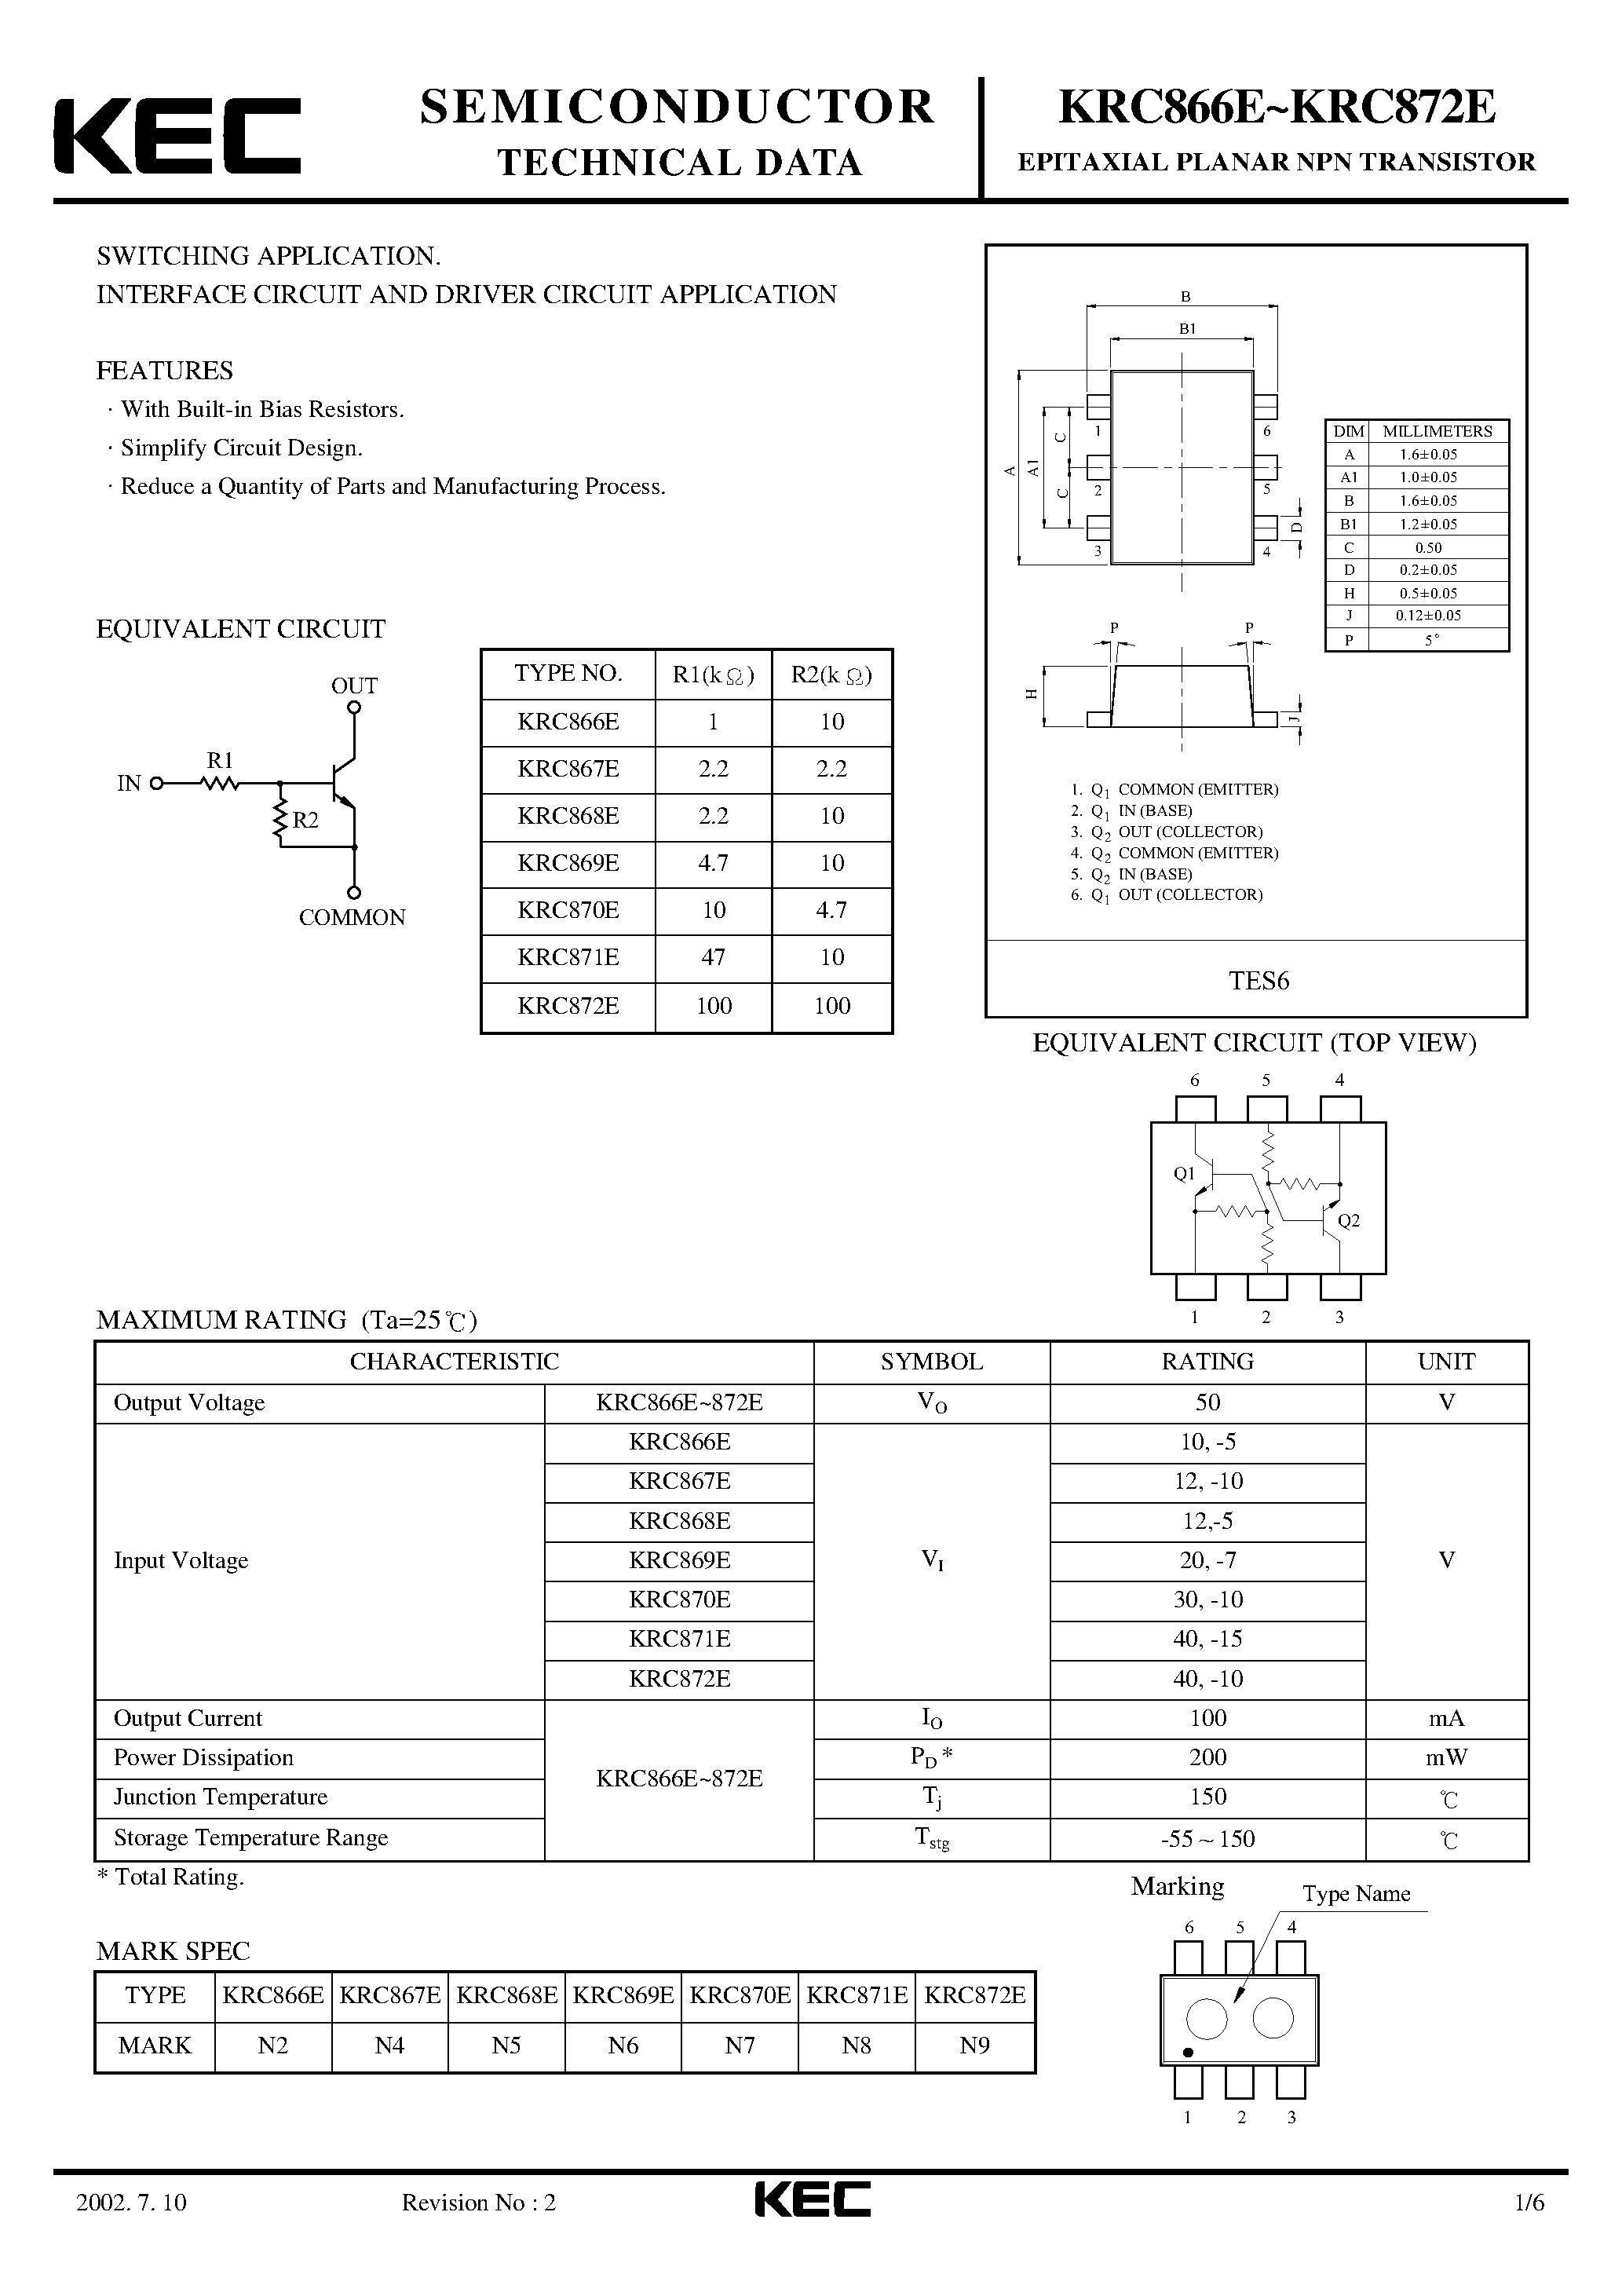 Datasheet KRC866E - (KRC866E - KRC872E) EPITAXIAL PLANAR NPN TRANSISTOR page 1